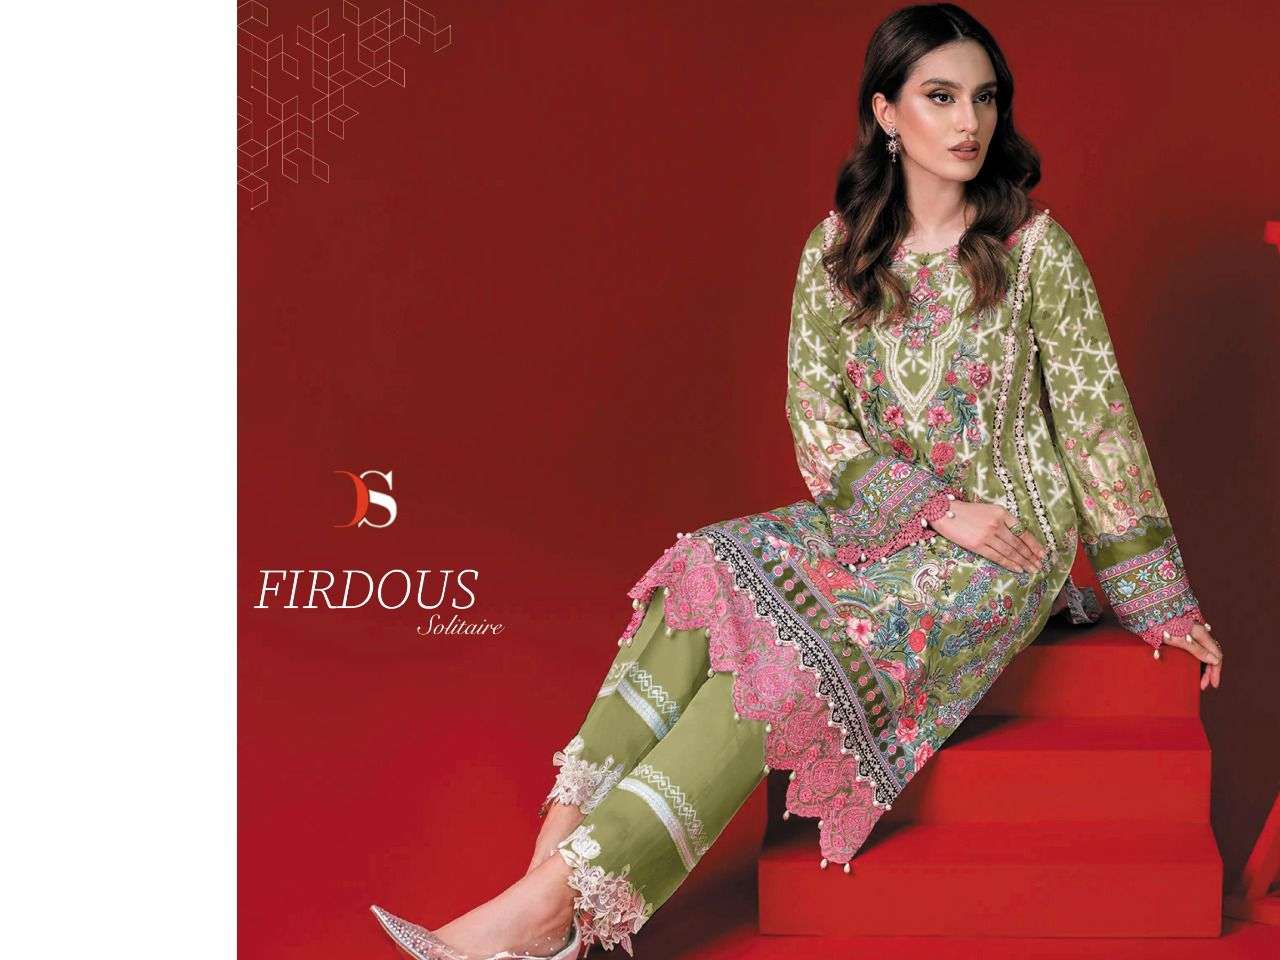 firdous solitaire by deepsy suits pure cotton fancy suits supplier online surat india